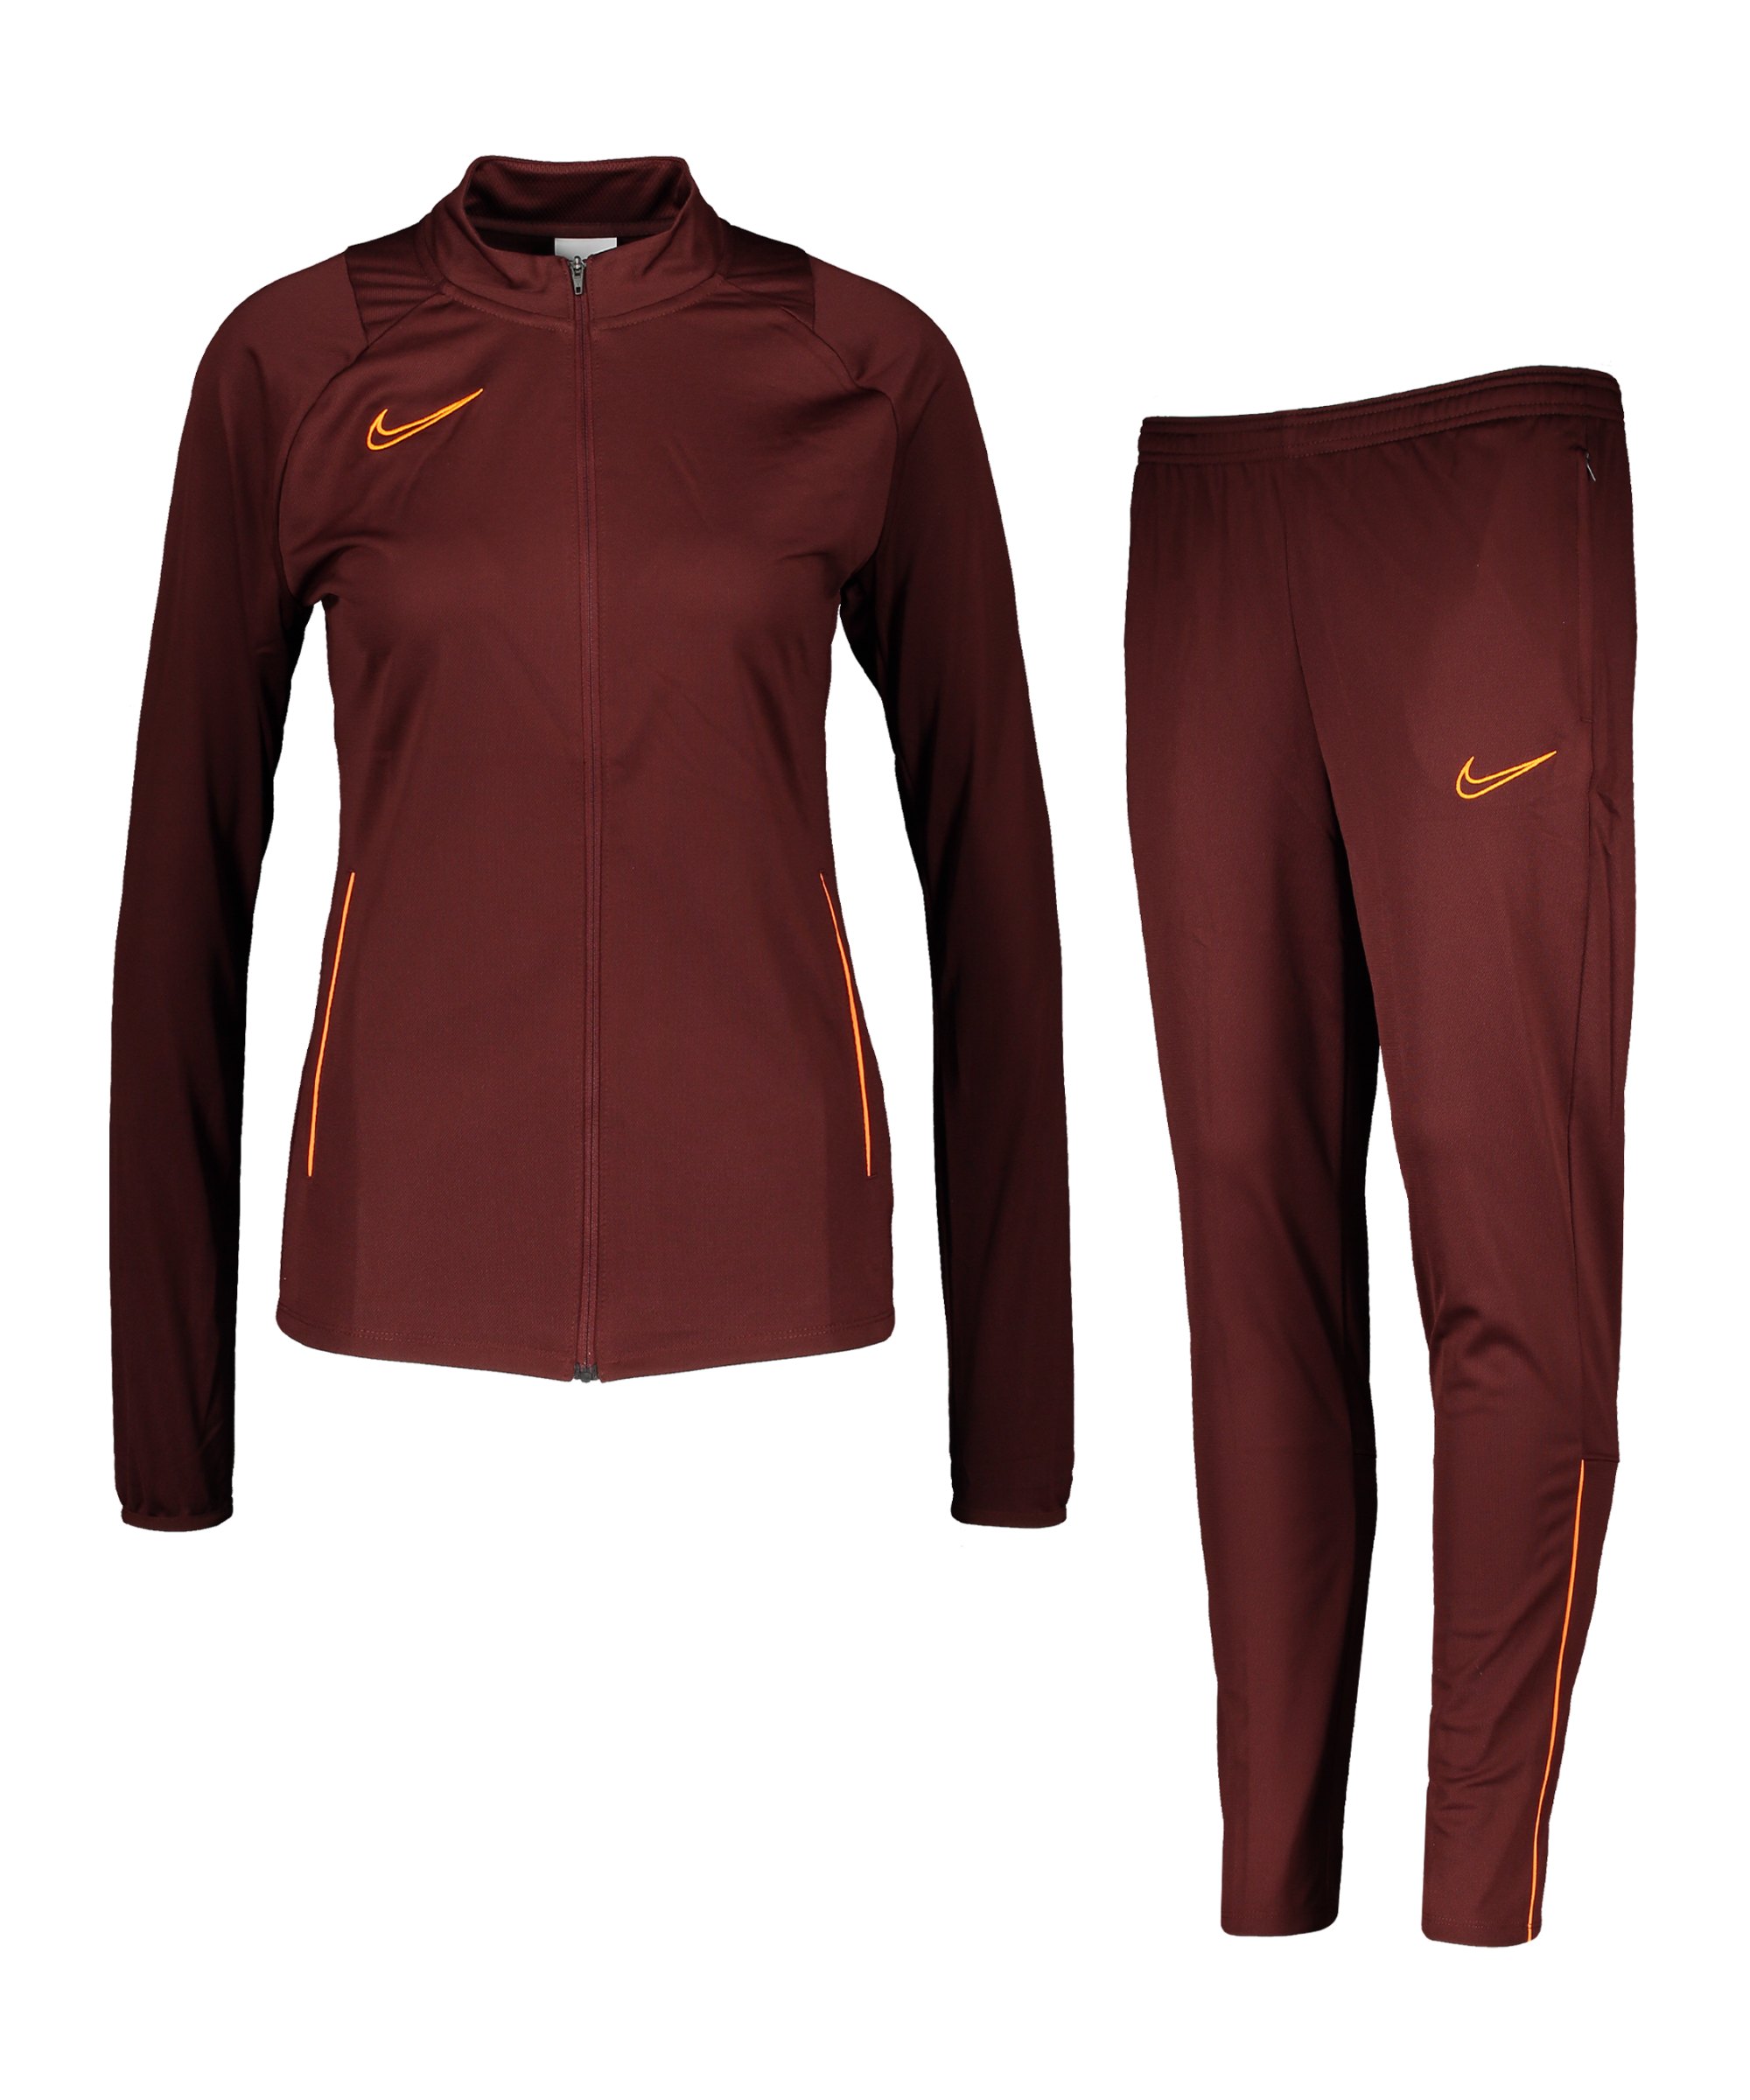 Nike Academy 21 Trainingsanzug Damen Braun F273 - braun